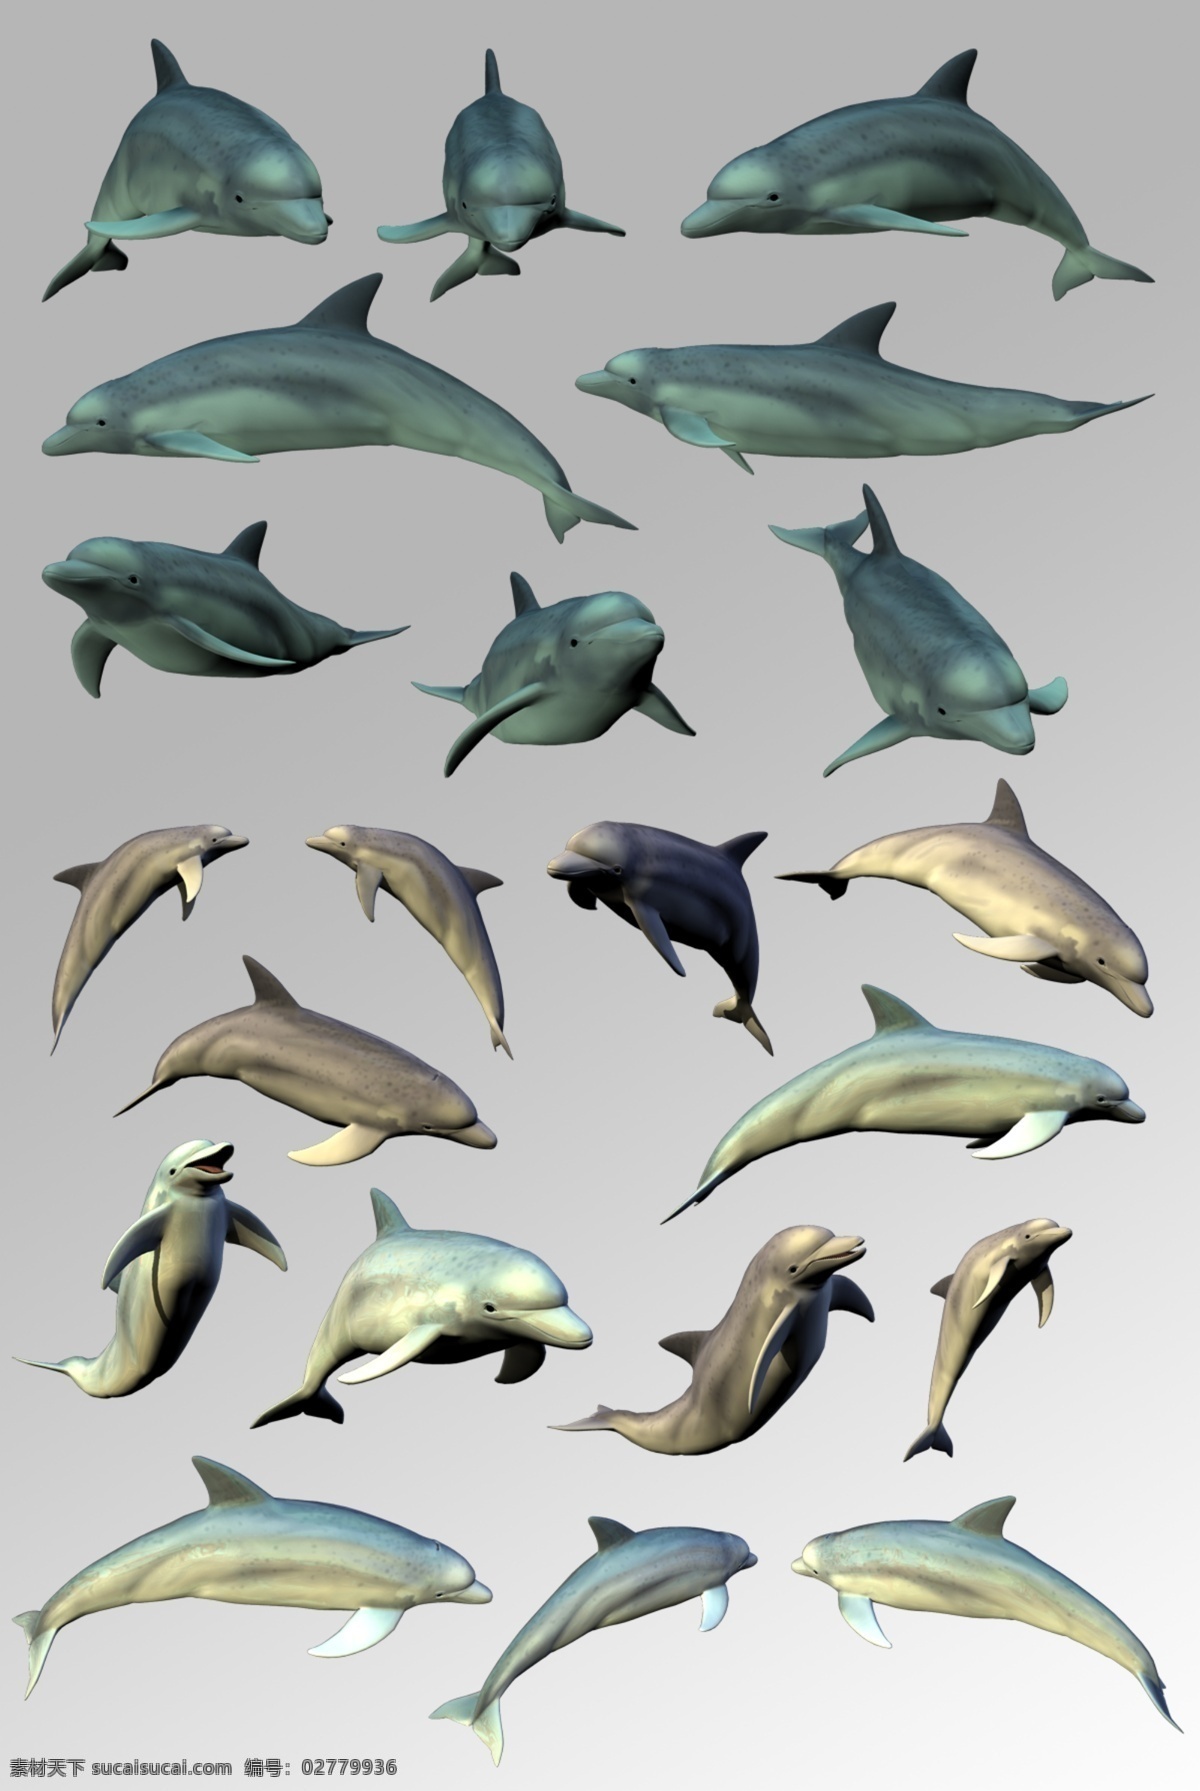 组 活泼 可爱 海豚 海洋生物 元素 海洋生物集合 psd分层 卡通鱼类 海底世界 海底生物 海洋 海洋素材 海豚素材 跳跃海豚